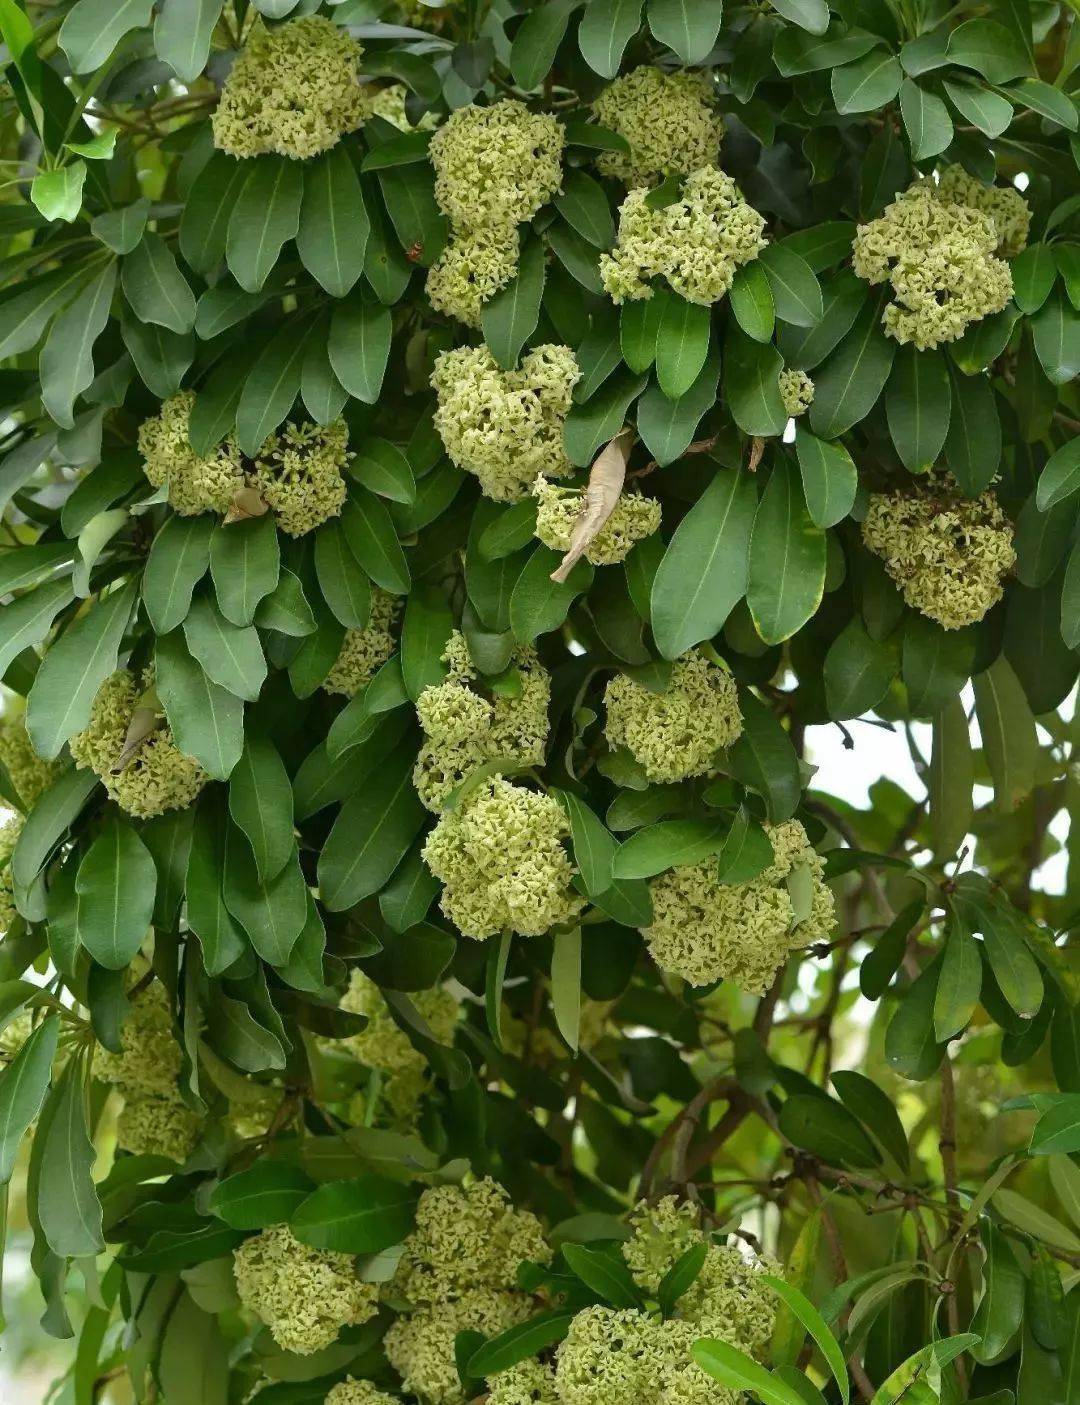 盆架子树花虽然所散发的气味较浓,但其产生的树液和气味主要用作抵抗